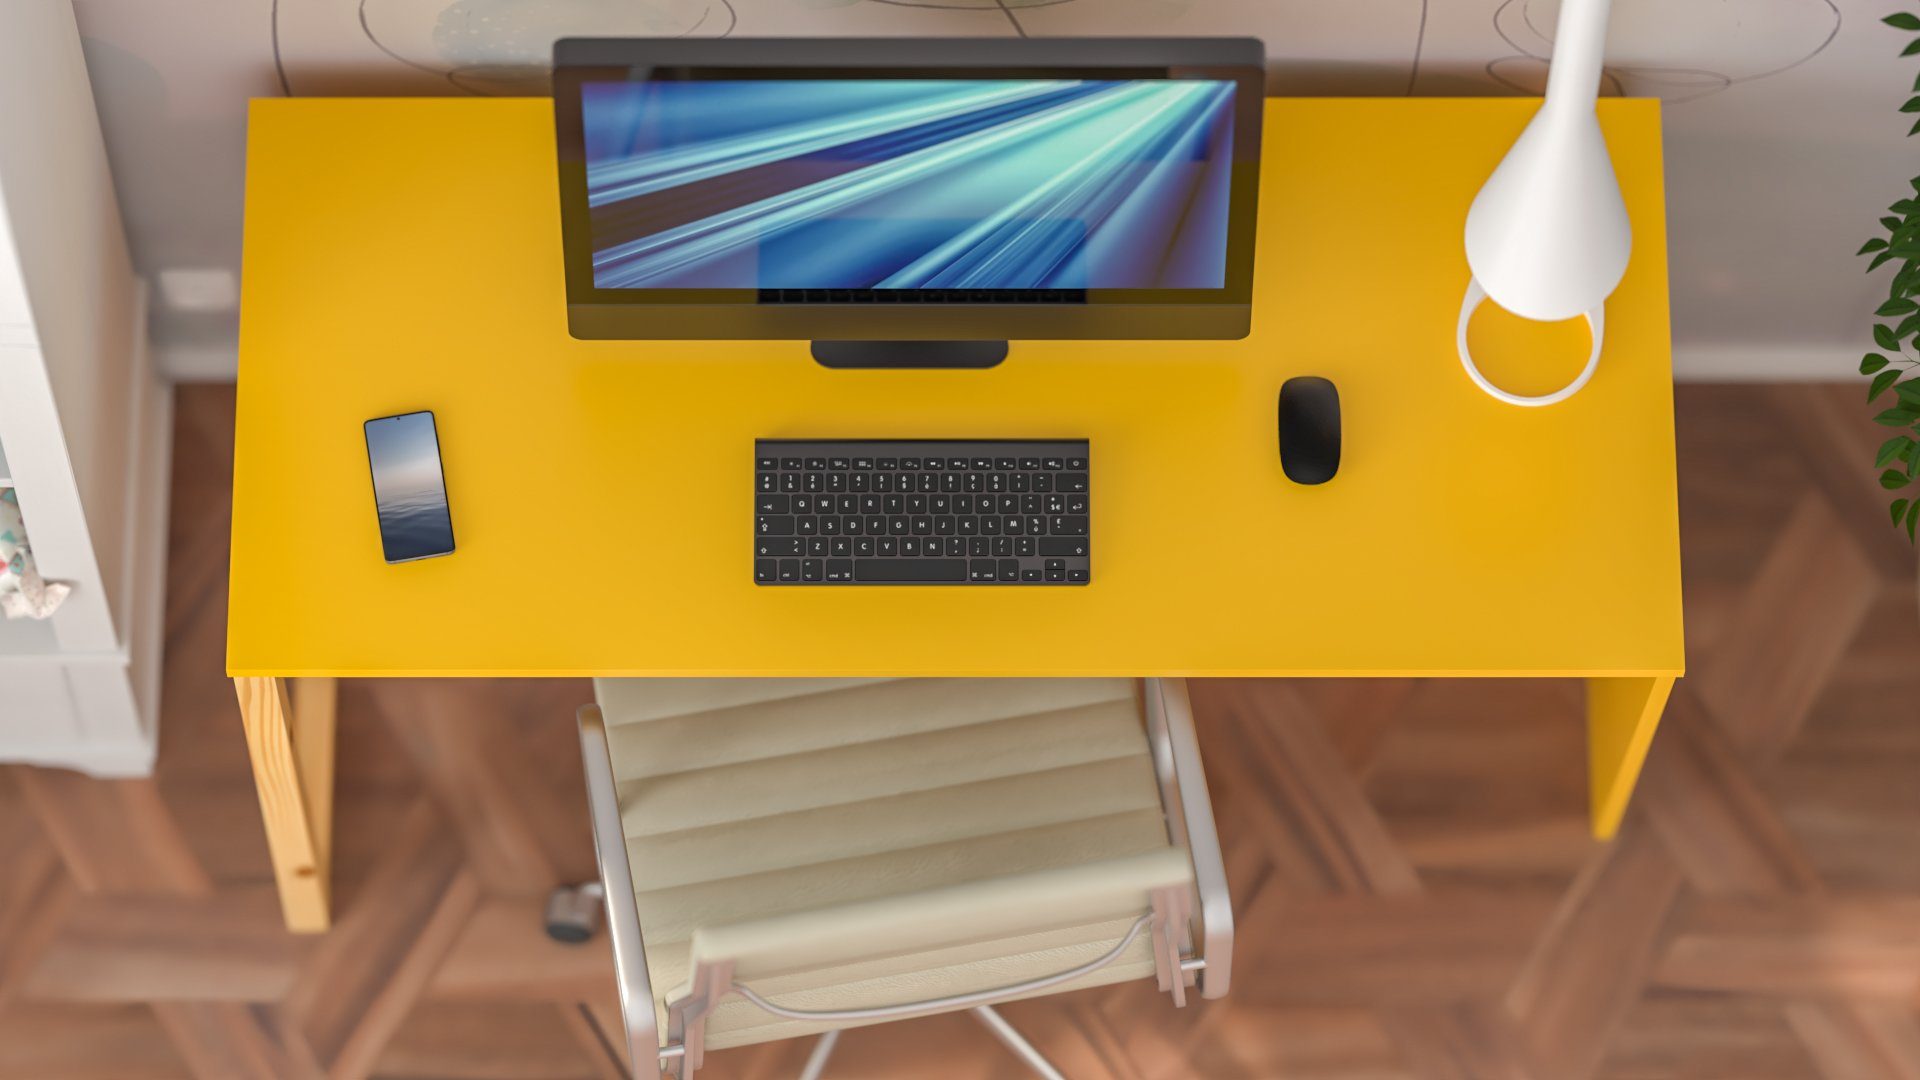 Schreibtisch Gelb ohne Carol Schreibtisch mit Carol Siblo Schublade) bunter Tischplatte (Bunter Kinderschreibtisch